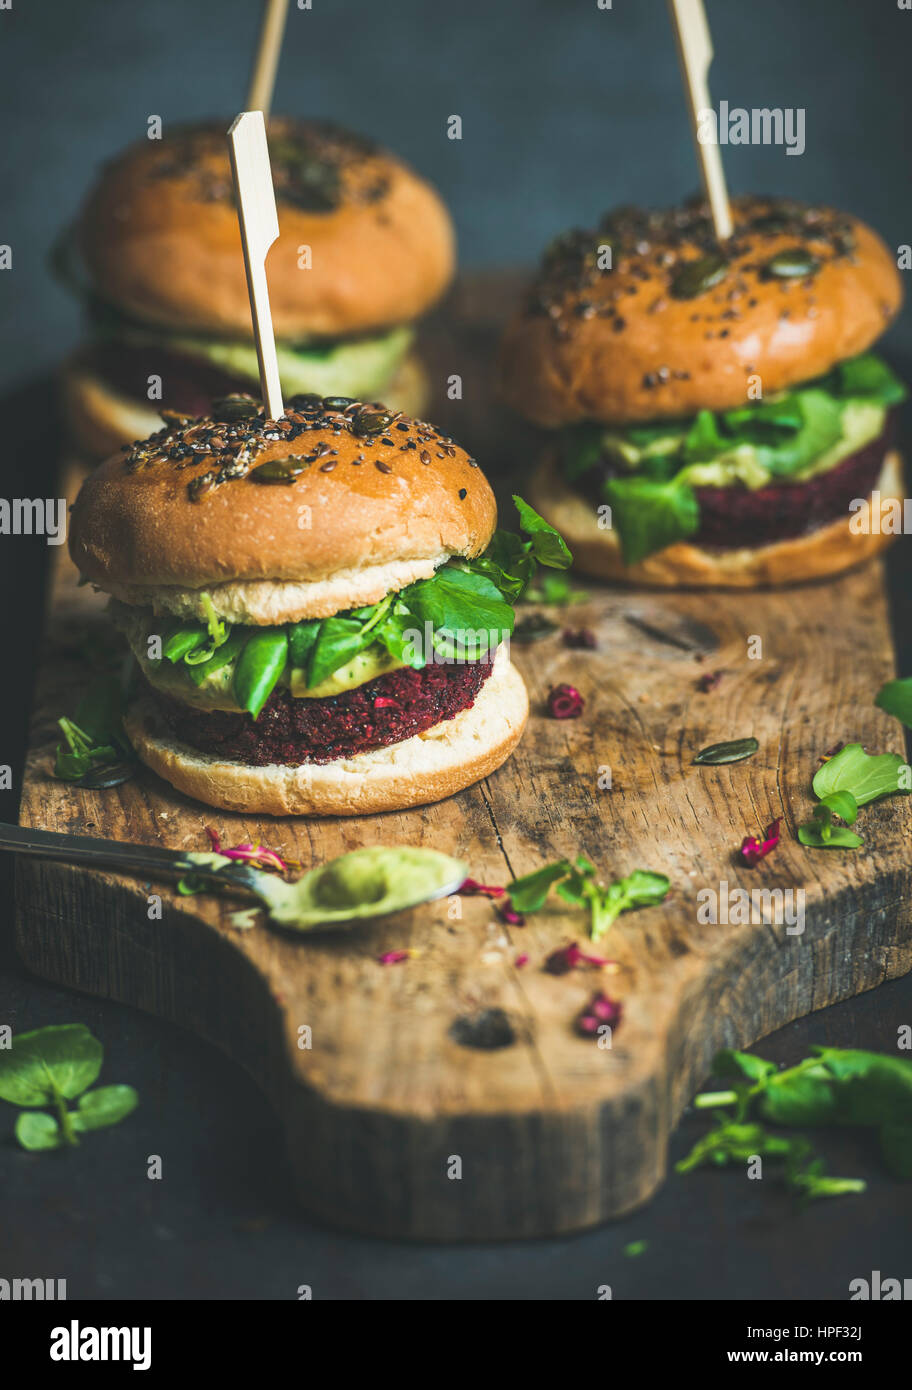 Vegano sano hamburger con la barbabietola e la quinoa patty, rucola, salsa di avocado, cereali integrali bun rustico di legno su sfondo scuro, selettivo fo Foto Stock